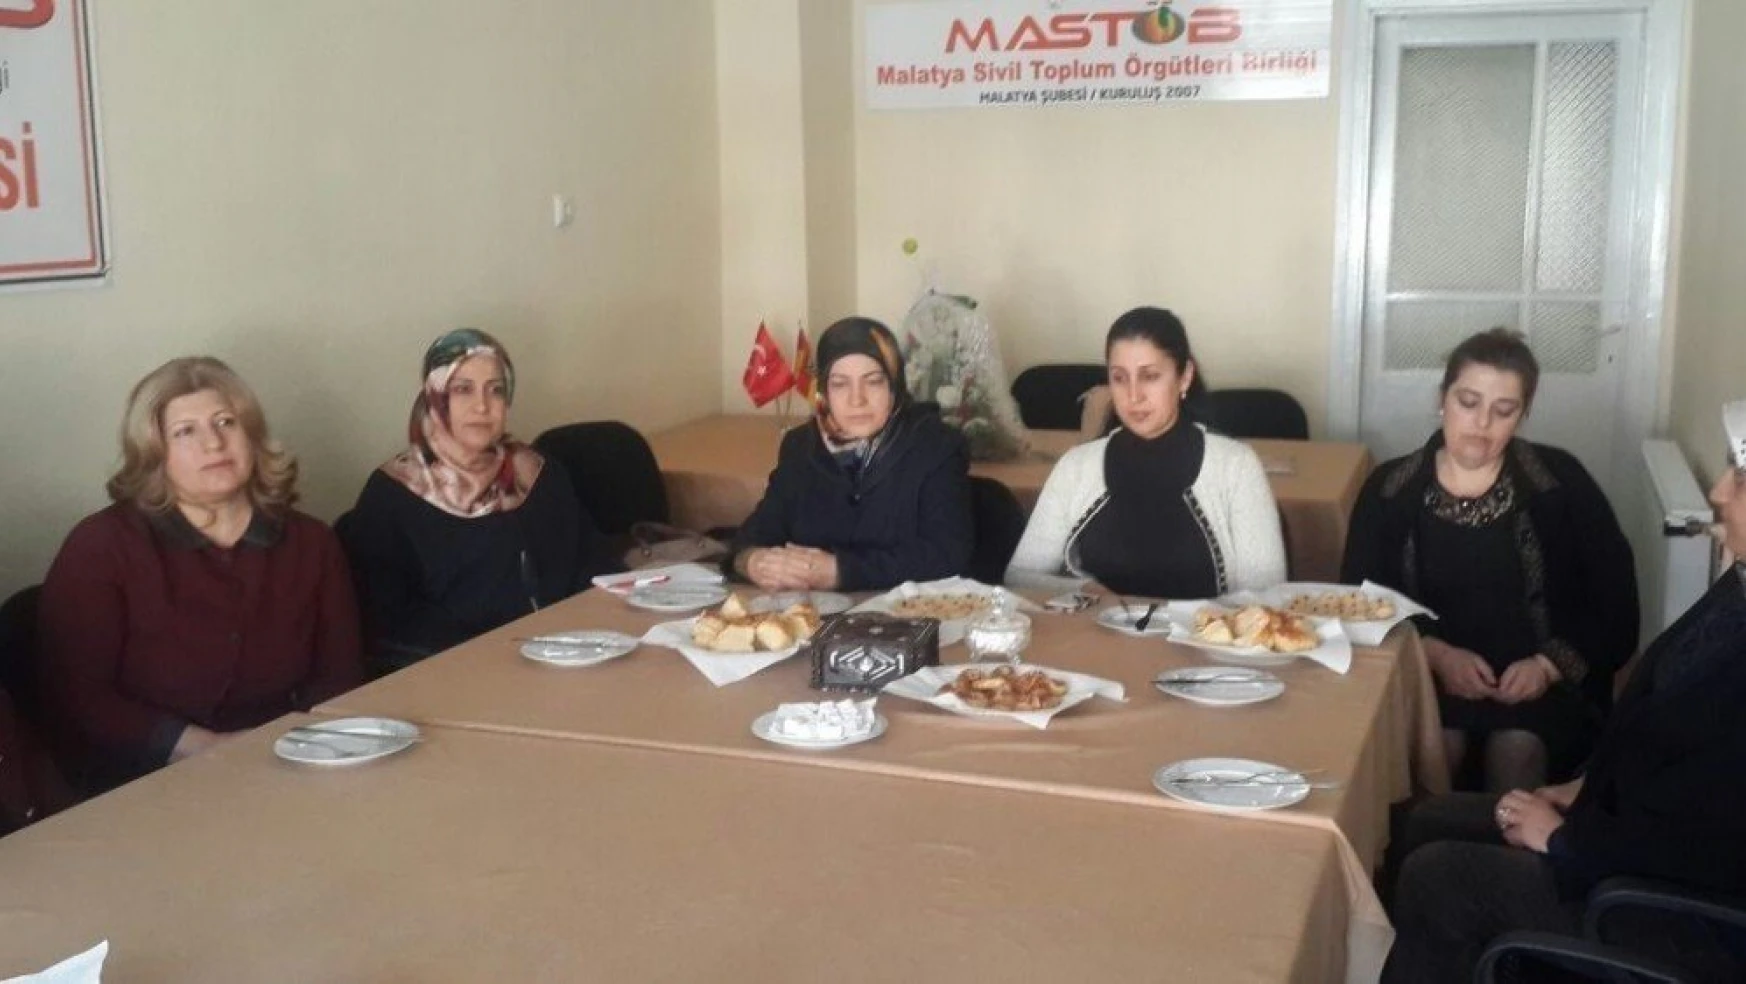 Malatya AK Parti Kadın Kolları MASTÖB'ü ziyaret etti
